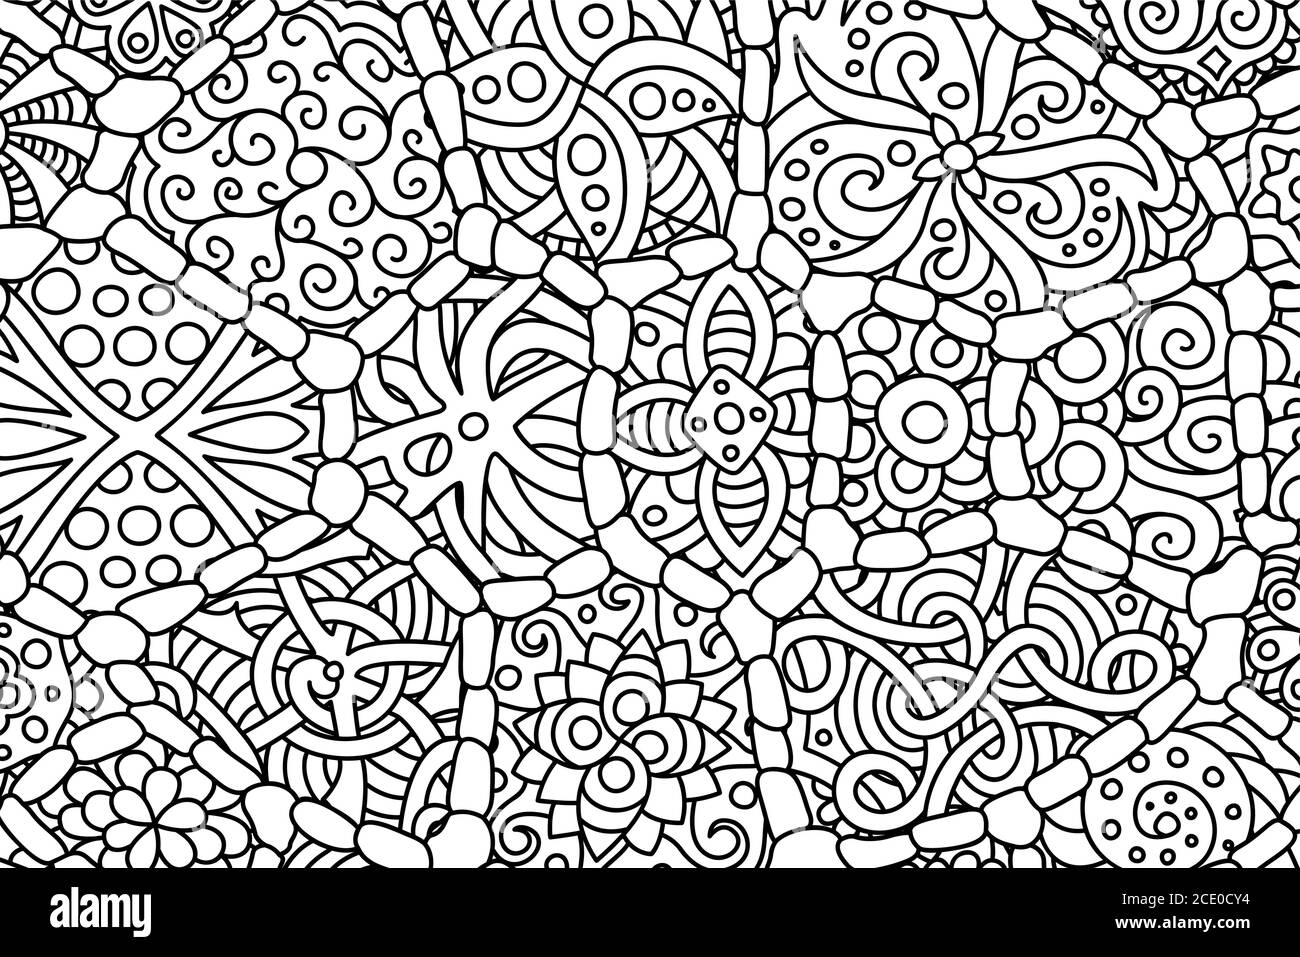 Schöne Rechteck Malbuch Seite mit abstrakt detaillierte Tribal Muster Stock Vektor